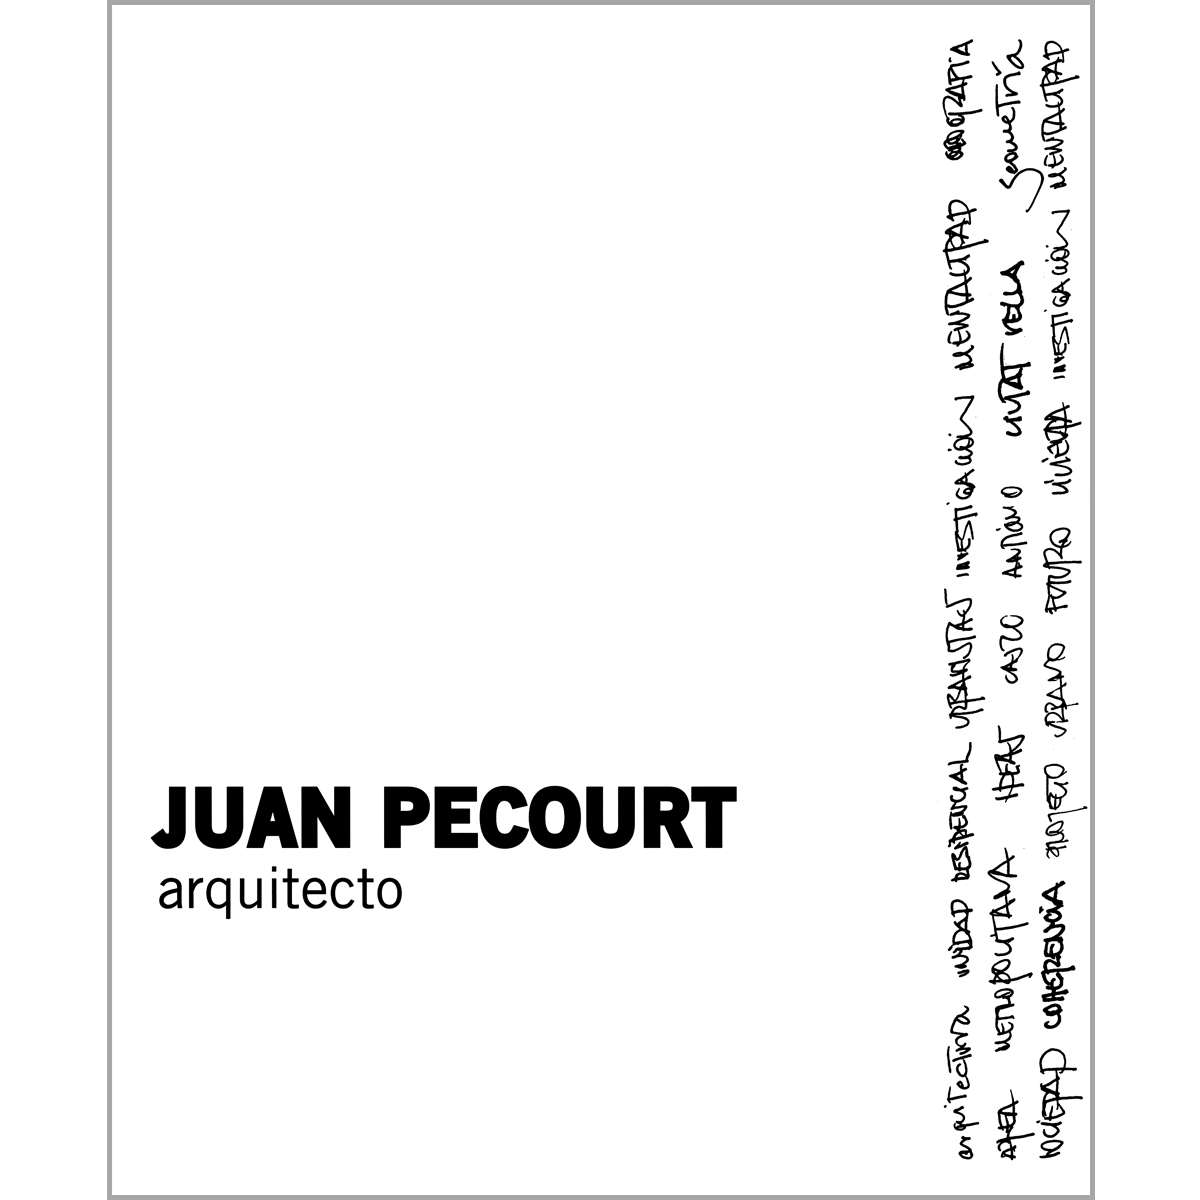 Juan Pecourt arquitecto